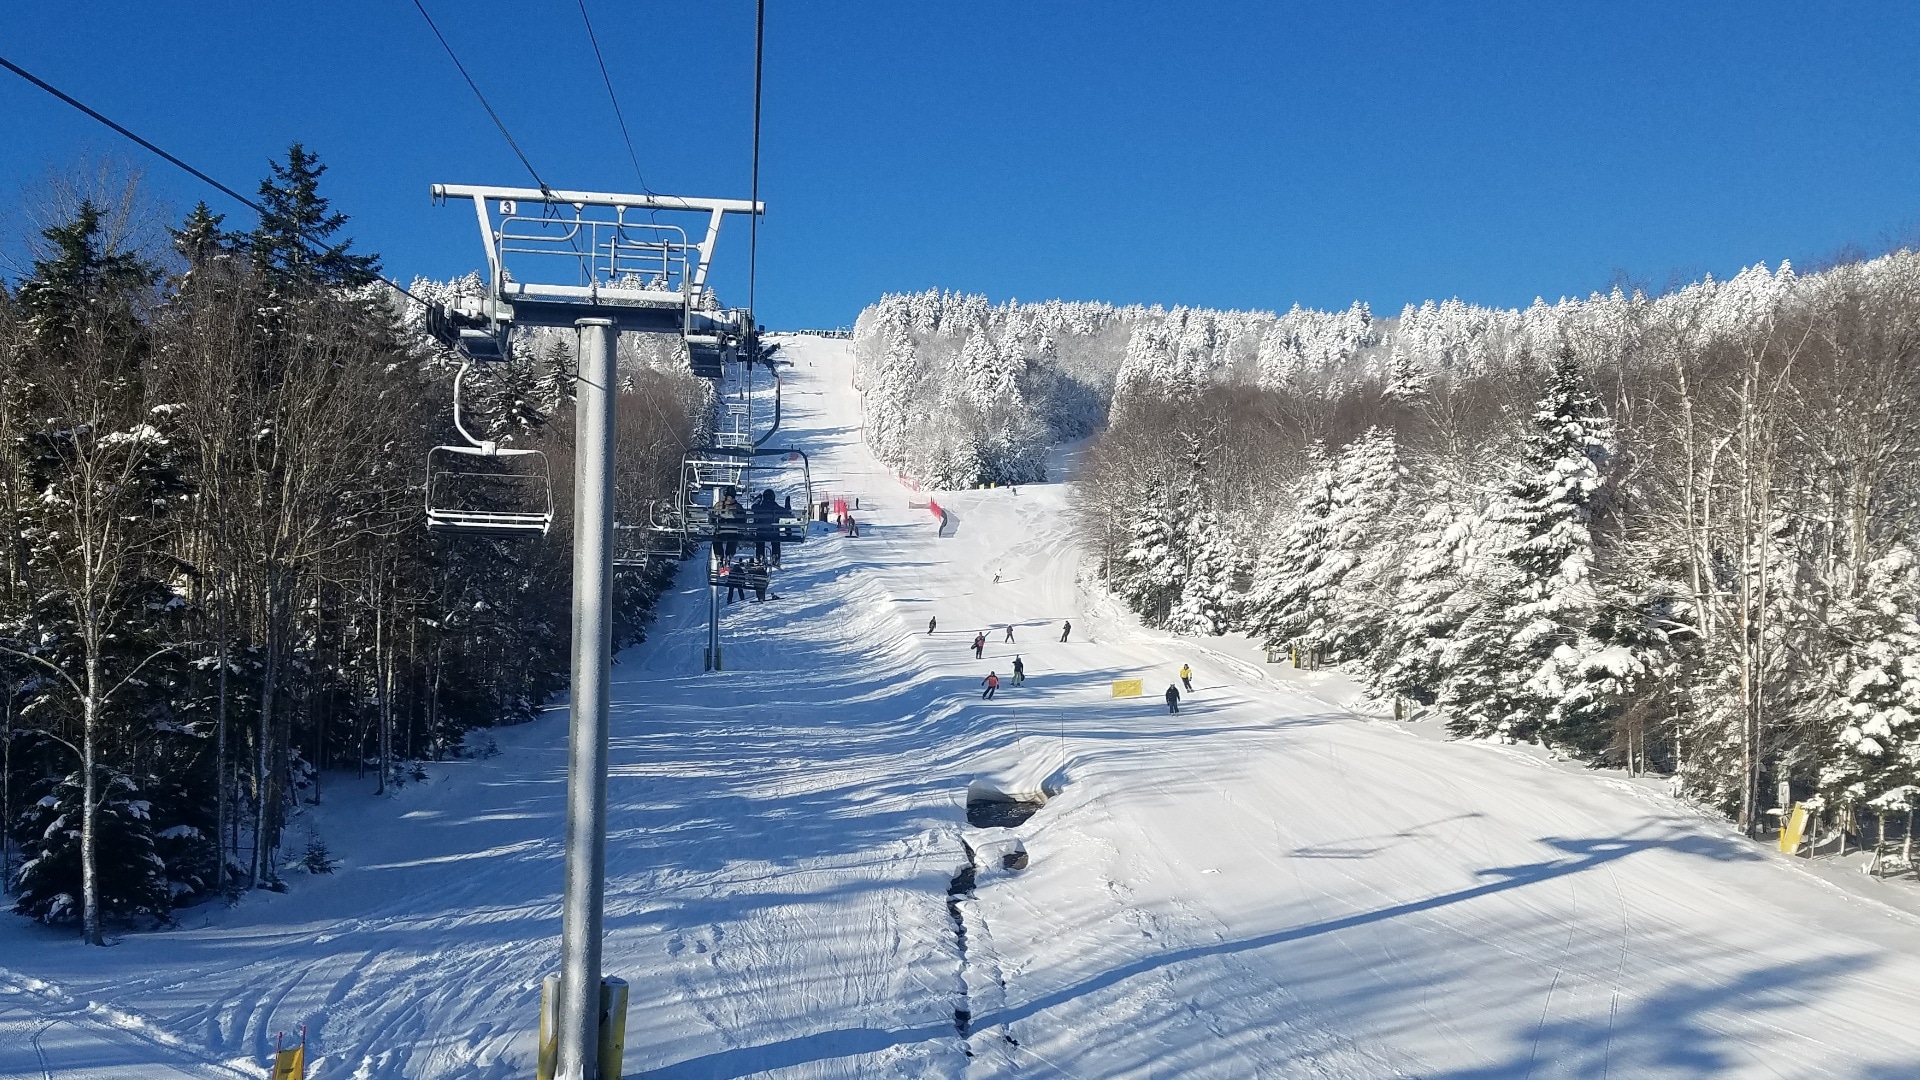 www.skisoutheast.com